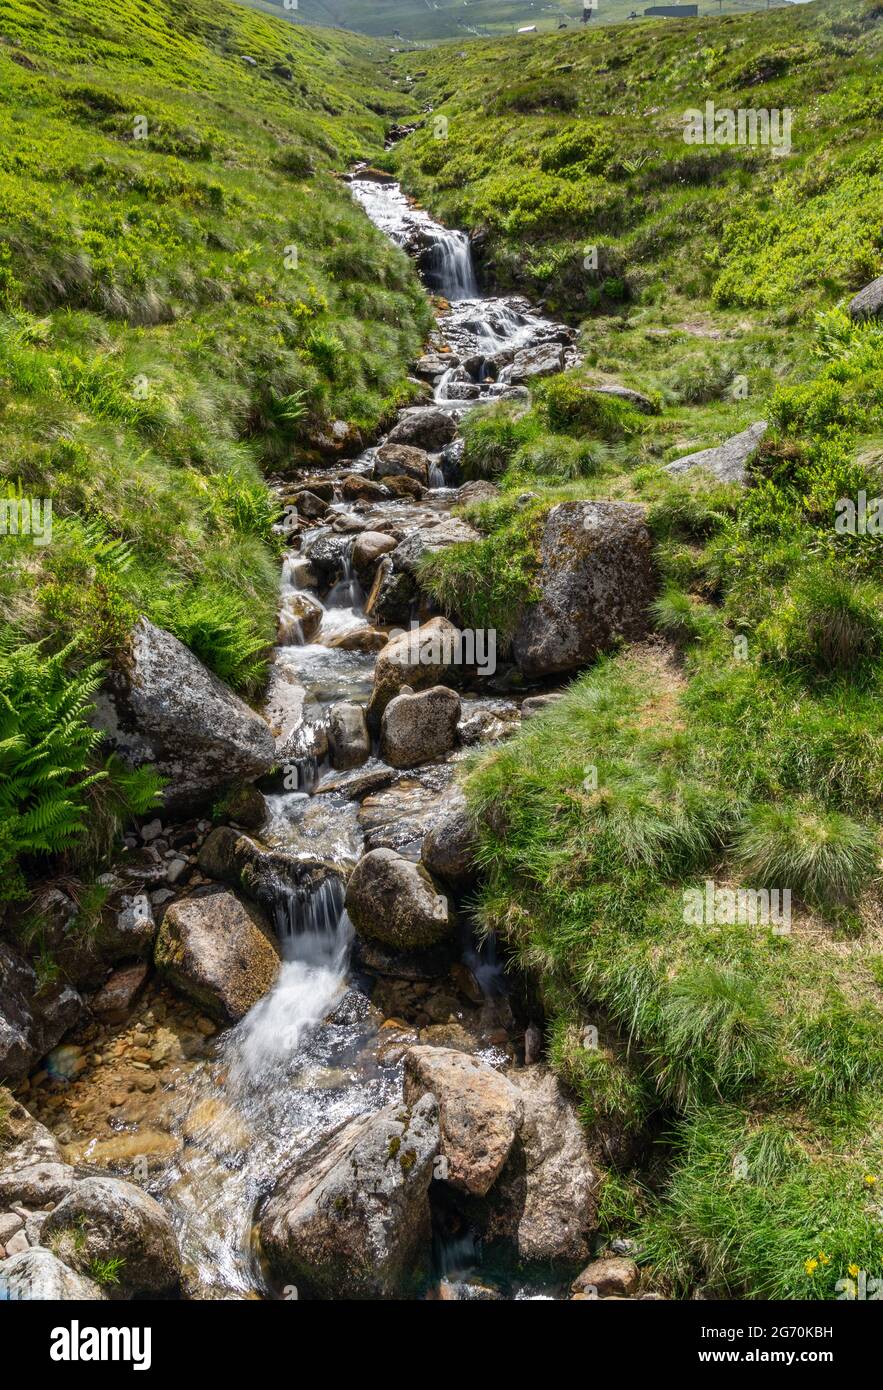 El agua que fluye a través de las piedras en un arroyo de montaña Foto de stock